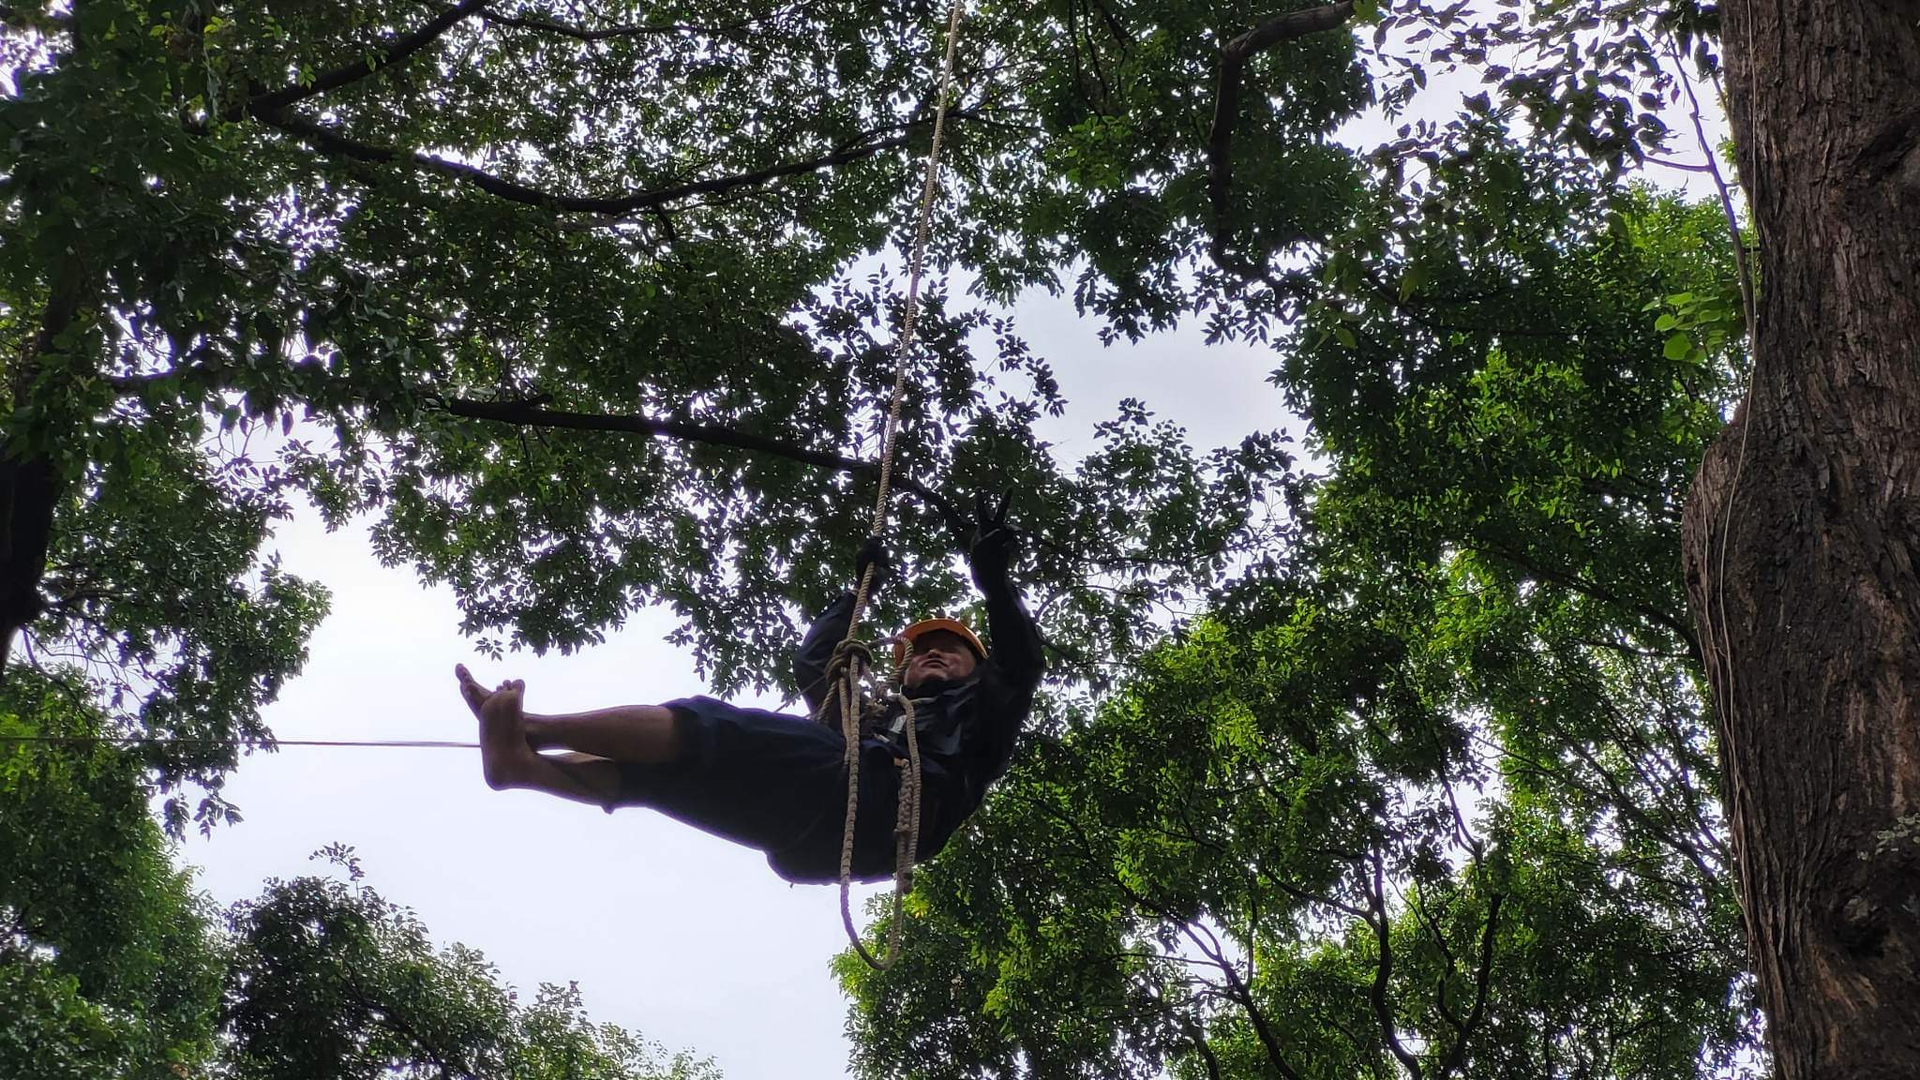 Sau 2 tiếng cắt tỉa cây sao đen ở độ cao 35m, người công nhân móc dây, người công nhân móc dây vào thân cây tạo một điểm tựa như ròng rọc thả tuột theo chiều thẳng đứng để tiếp đất.